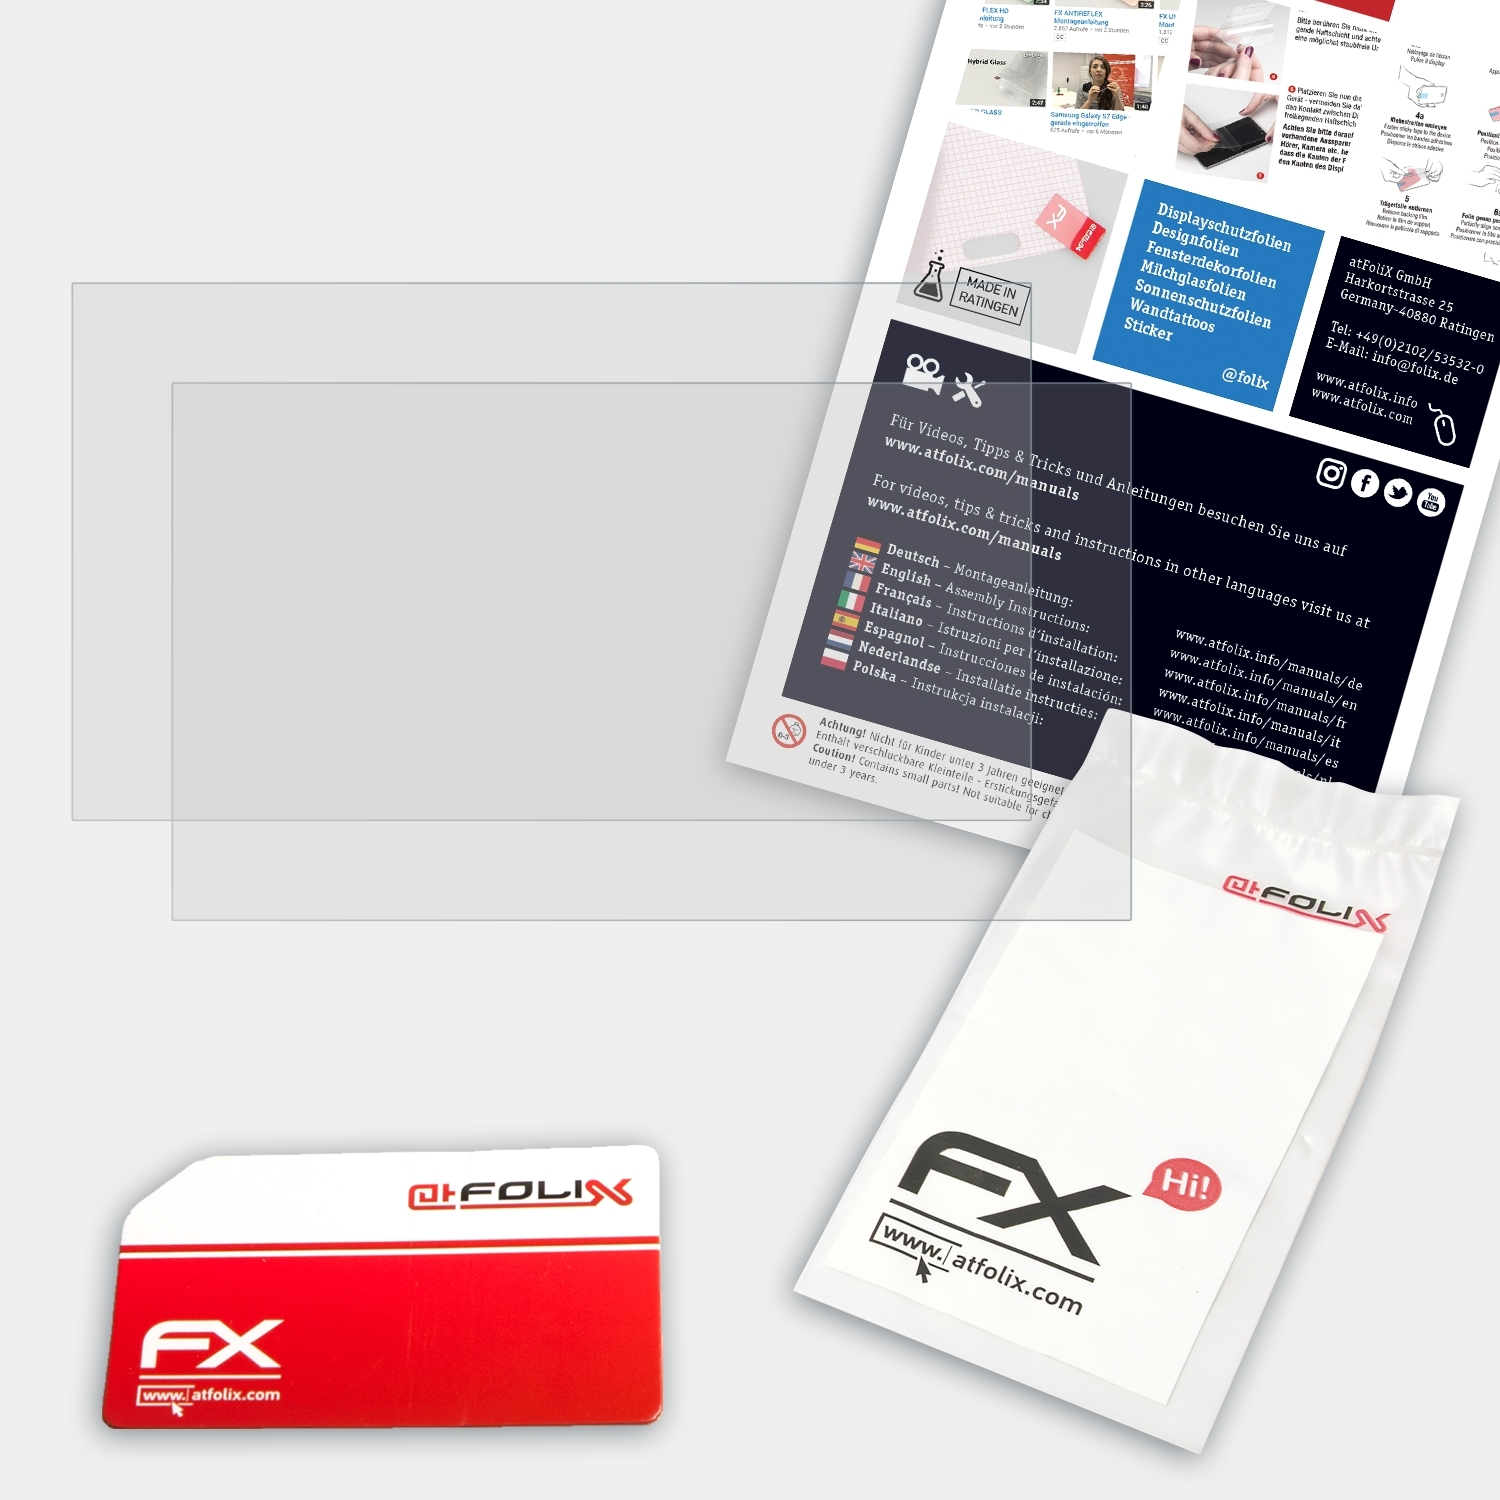 ATFOLIX 2x FX-Antireflex Displayschutz(für Lenovo Gaming L340 (17 Inch)) IdeaPad